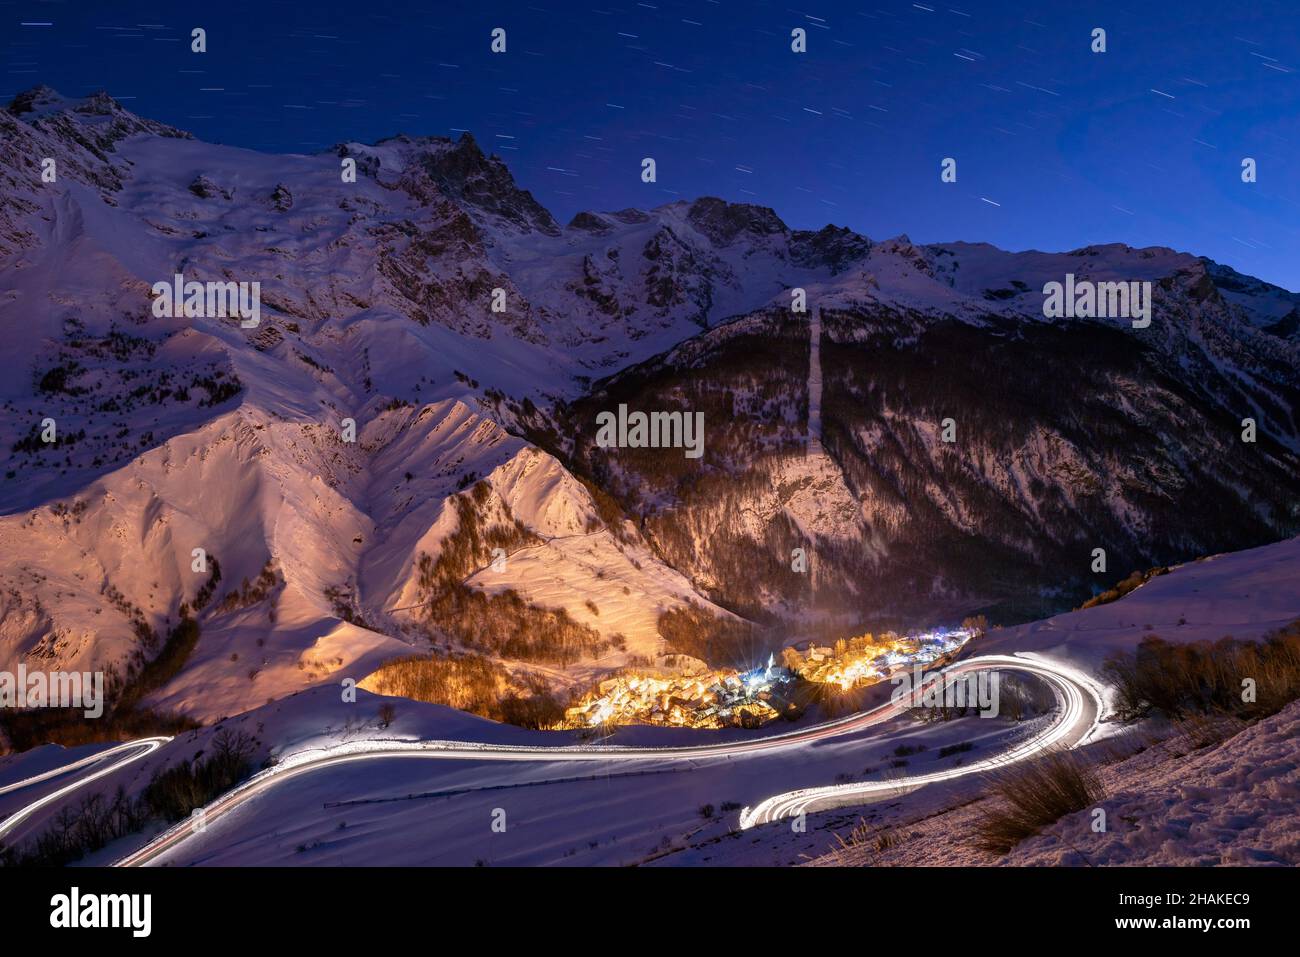 Parque Nacional Ecrins y el pueblo de La Grave iluminado al atardecer con el pico de La Meije. Estación de esquí en Altos Alpes (Alpes franceses). Francia Foto de stock